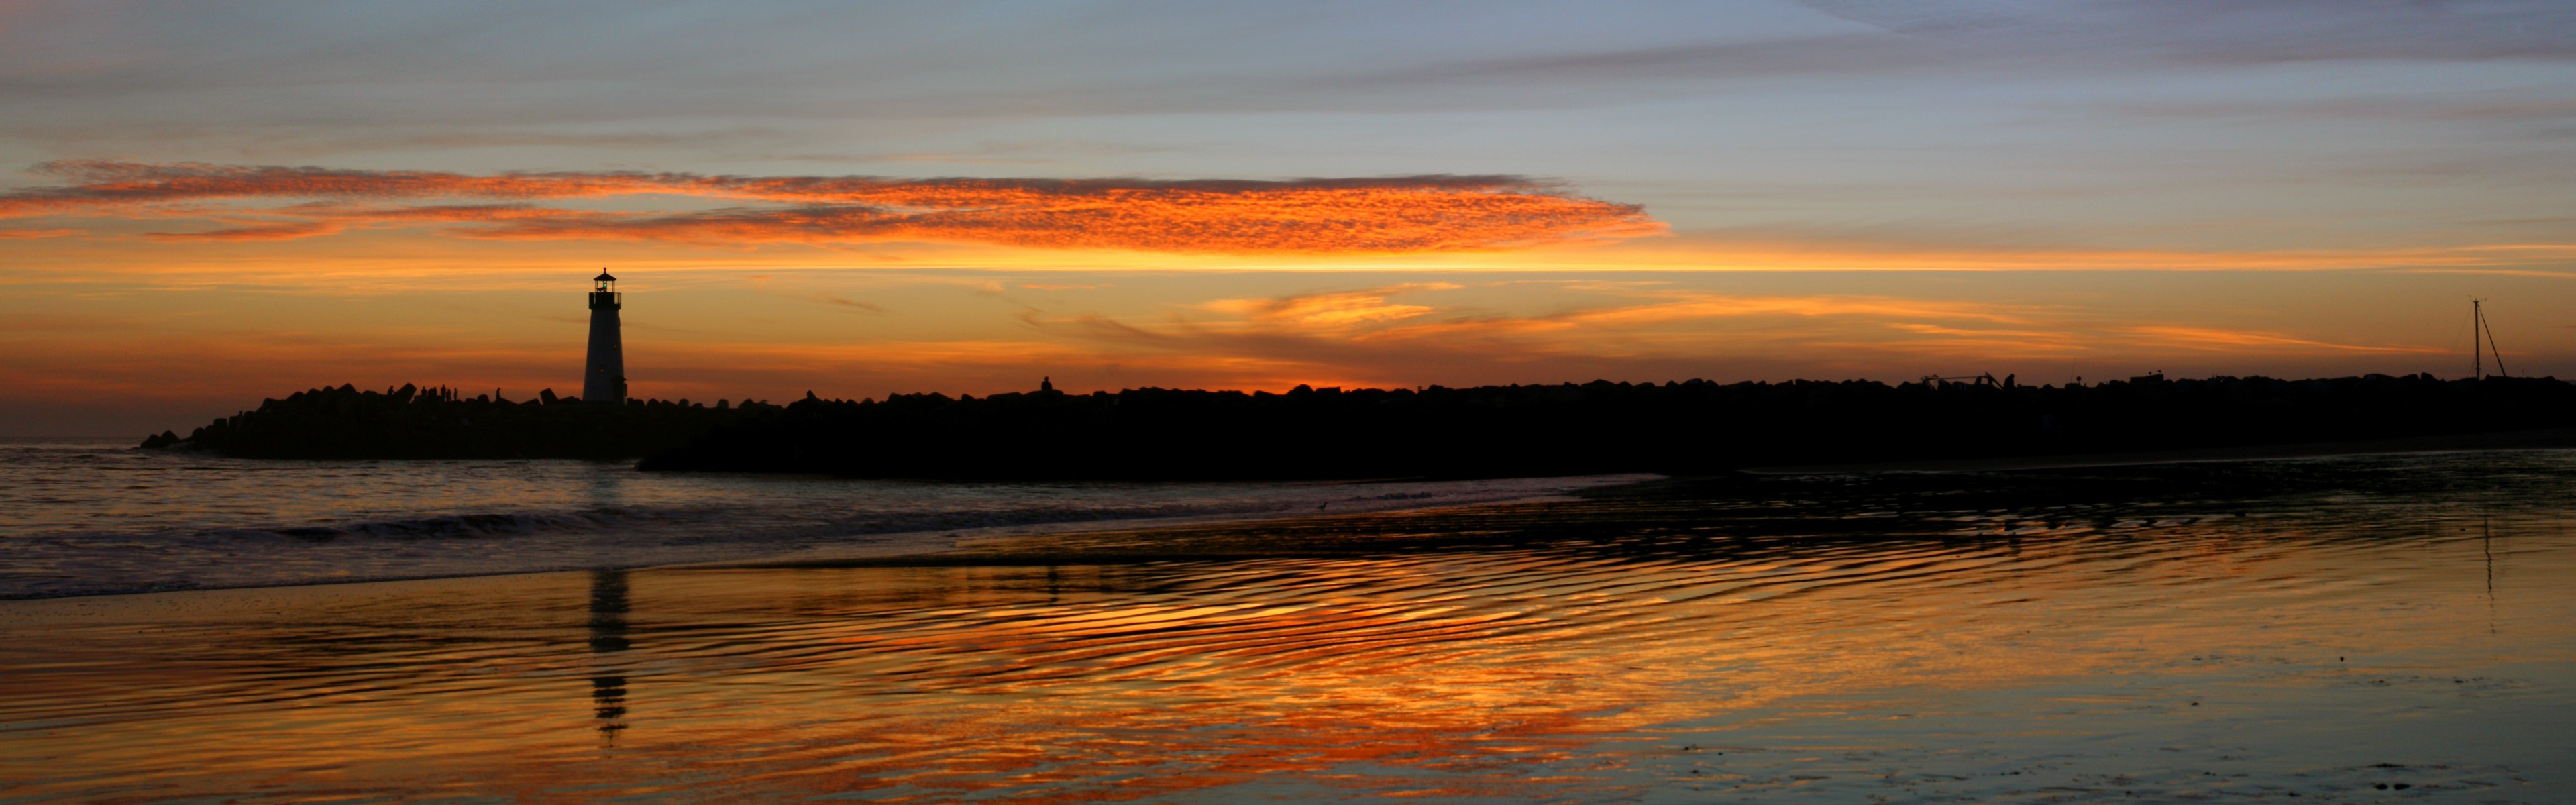 santa-cruz-sunset.jpg